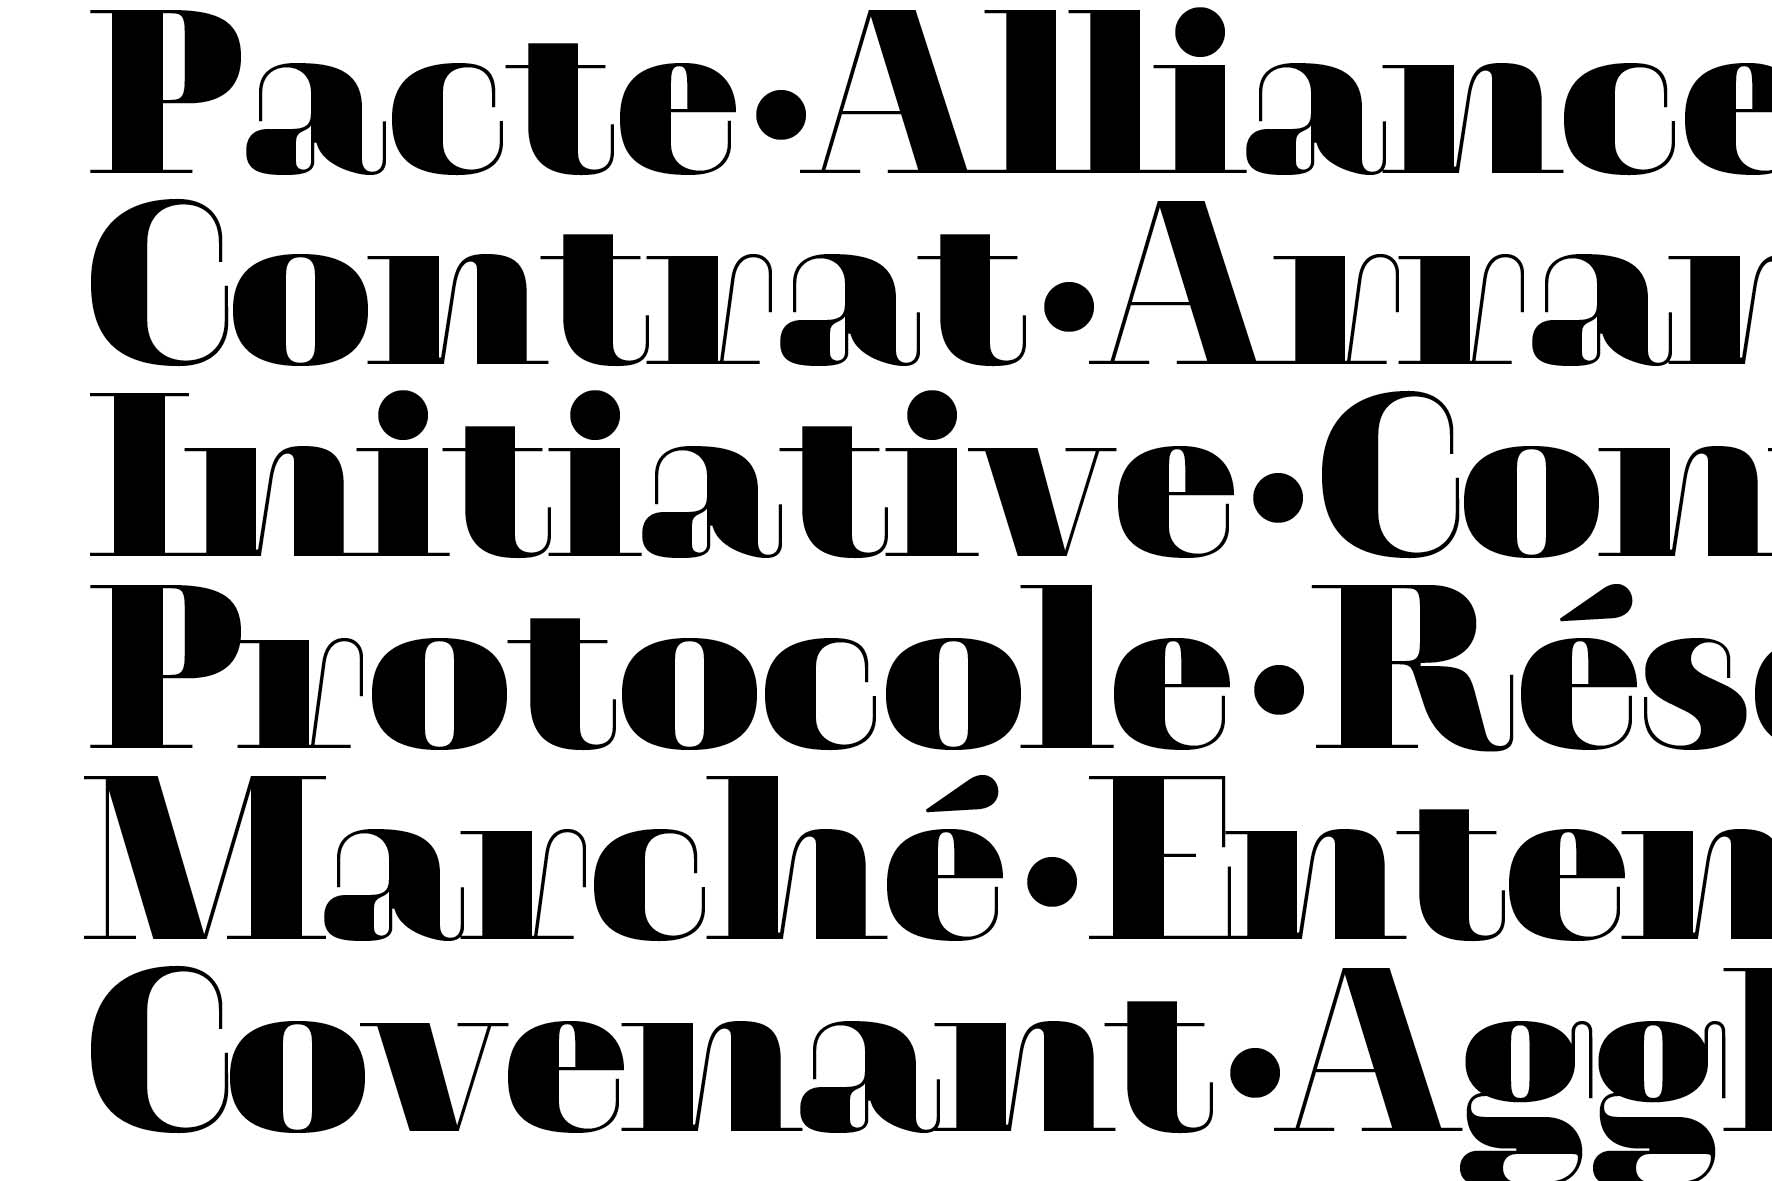 type design typographique : leo guibert design covenant typeface